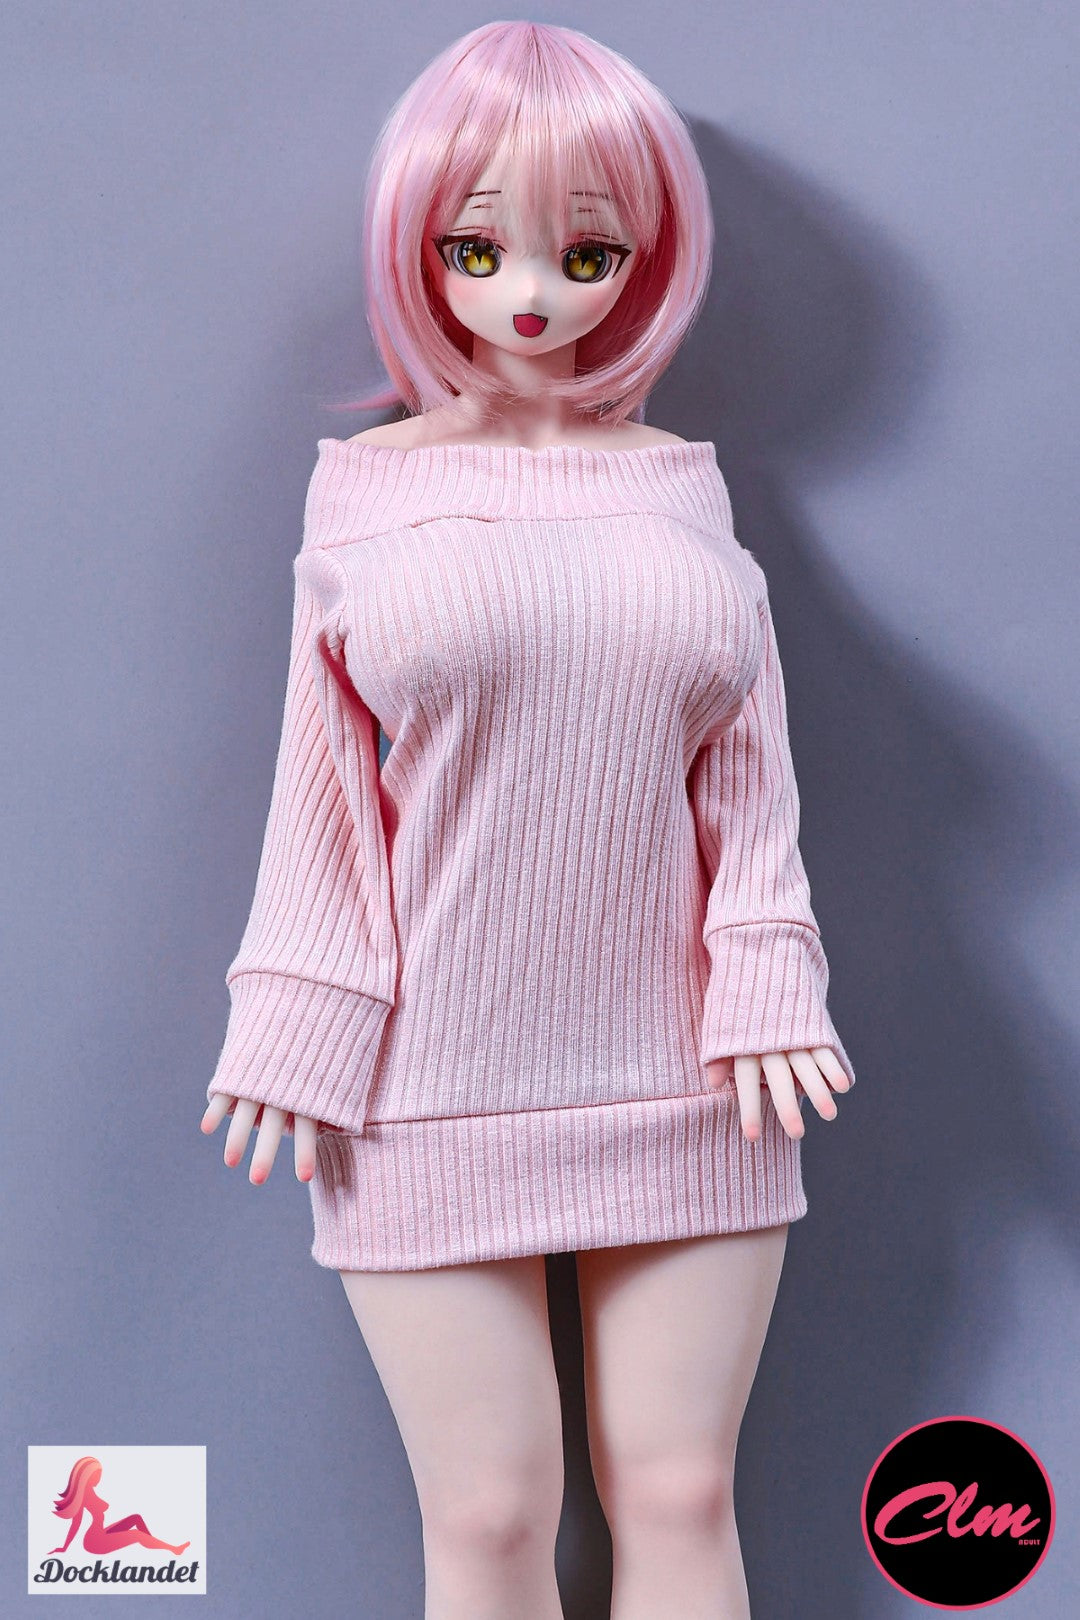 Azami är en silikon-docka på 60 cm med en härlig stil från Climax Doll. Denna sexdocka har ett unikt utseende och en kurvig kropp med stora bröst i storlek G-kupa. Climax Doll har dockor både av TPE och silikon i många olika storlekar.